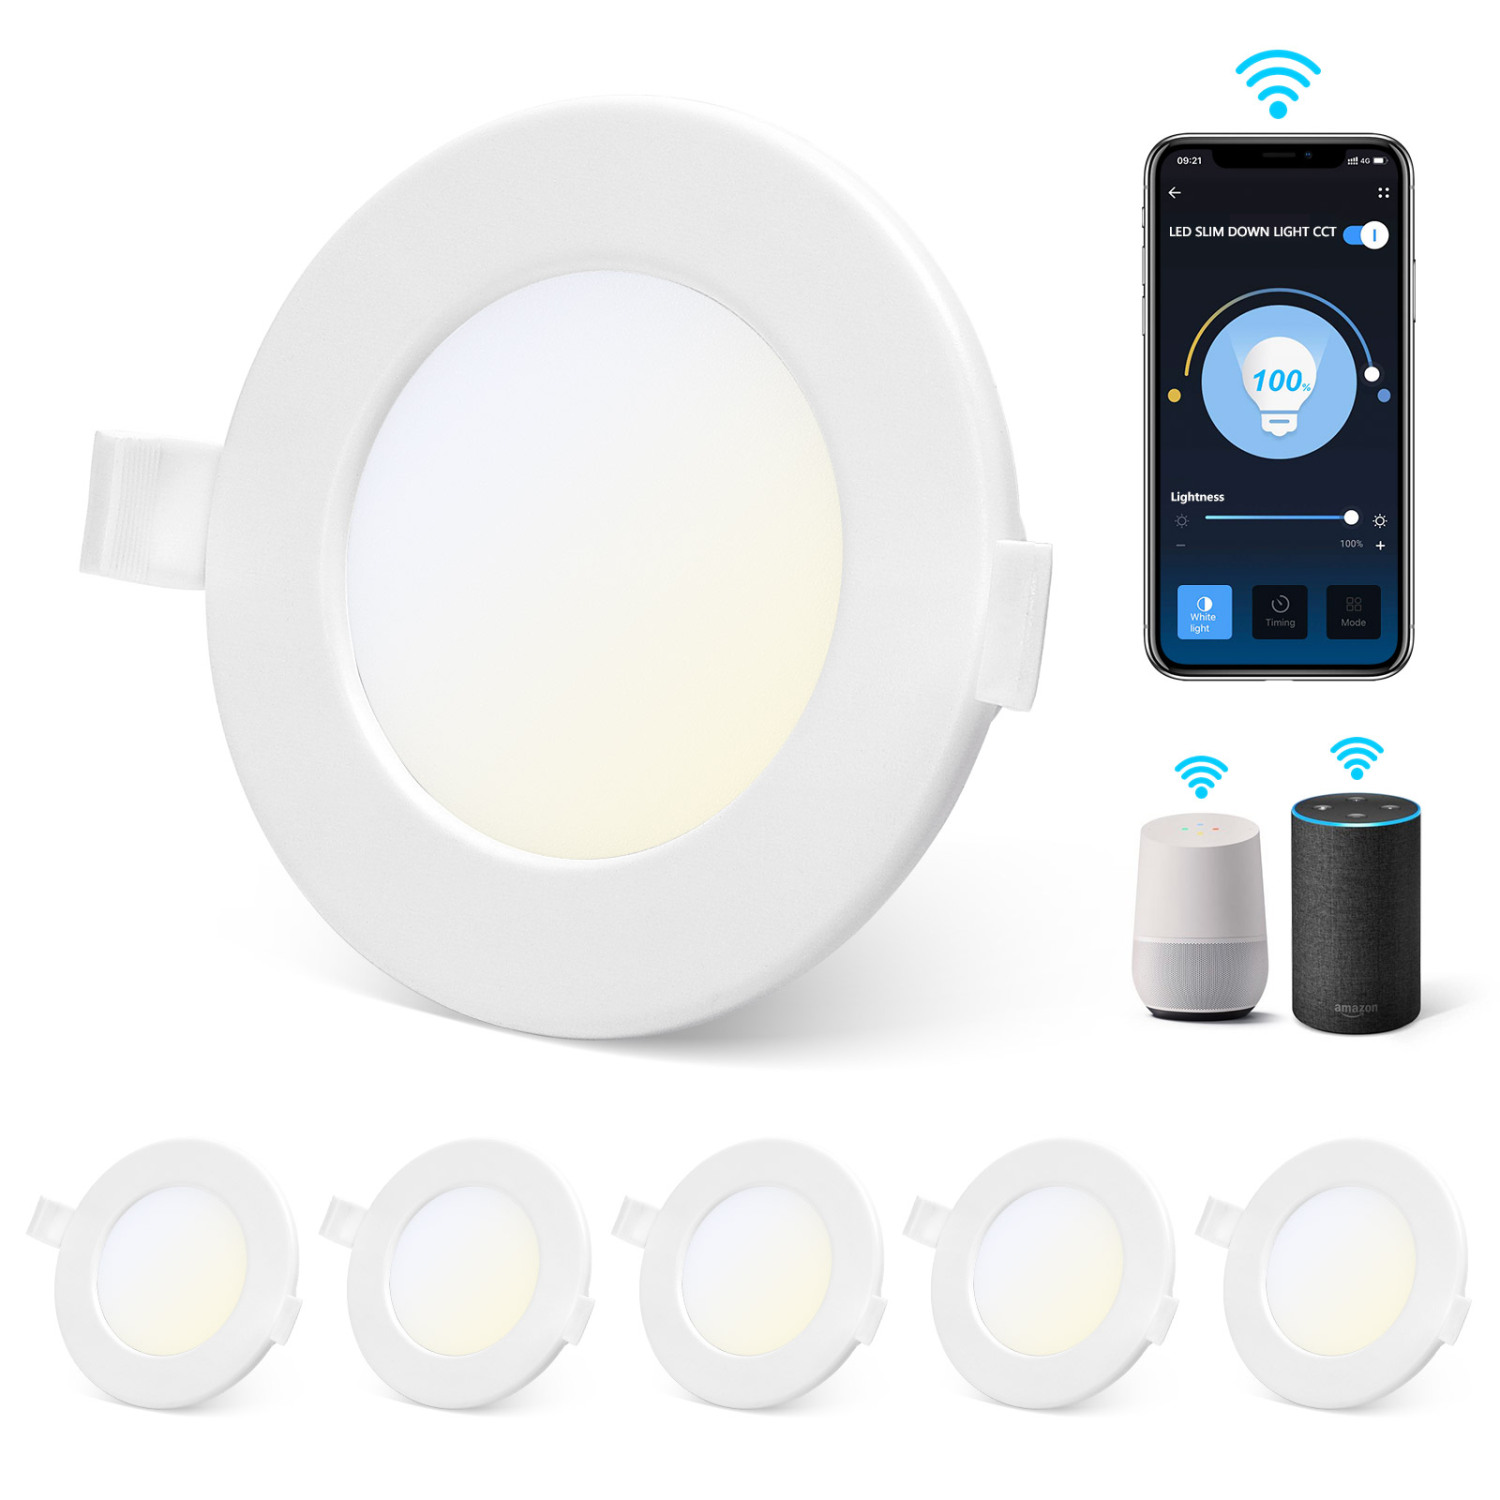 Aigostar Downlight LED Empotrable Inteligente Ultrafina 12W, CCT. Regulable de luz cálida a blanca 3000-6500K, 820lm. Compatible Alexa y Google Home. foco empotrable LED: 17 x 3,2 cm alto.(5)